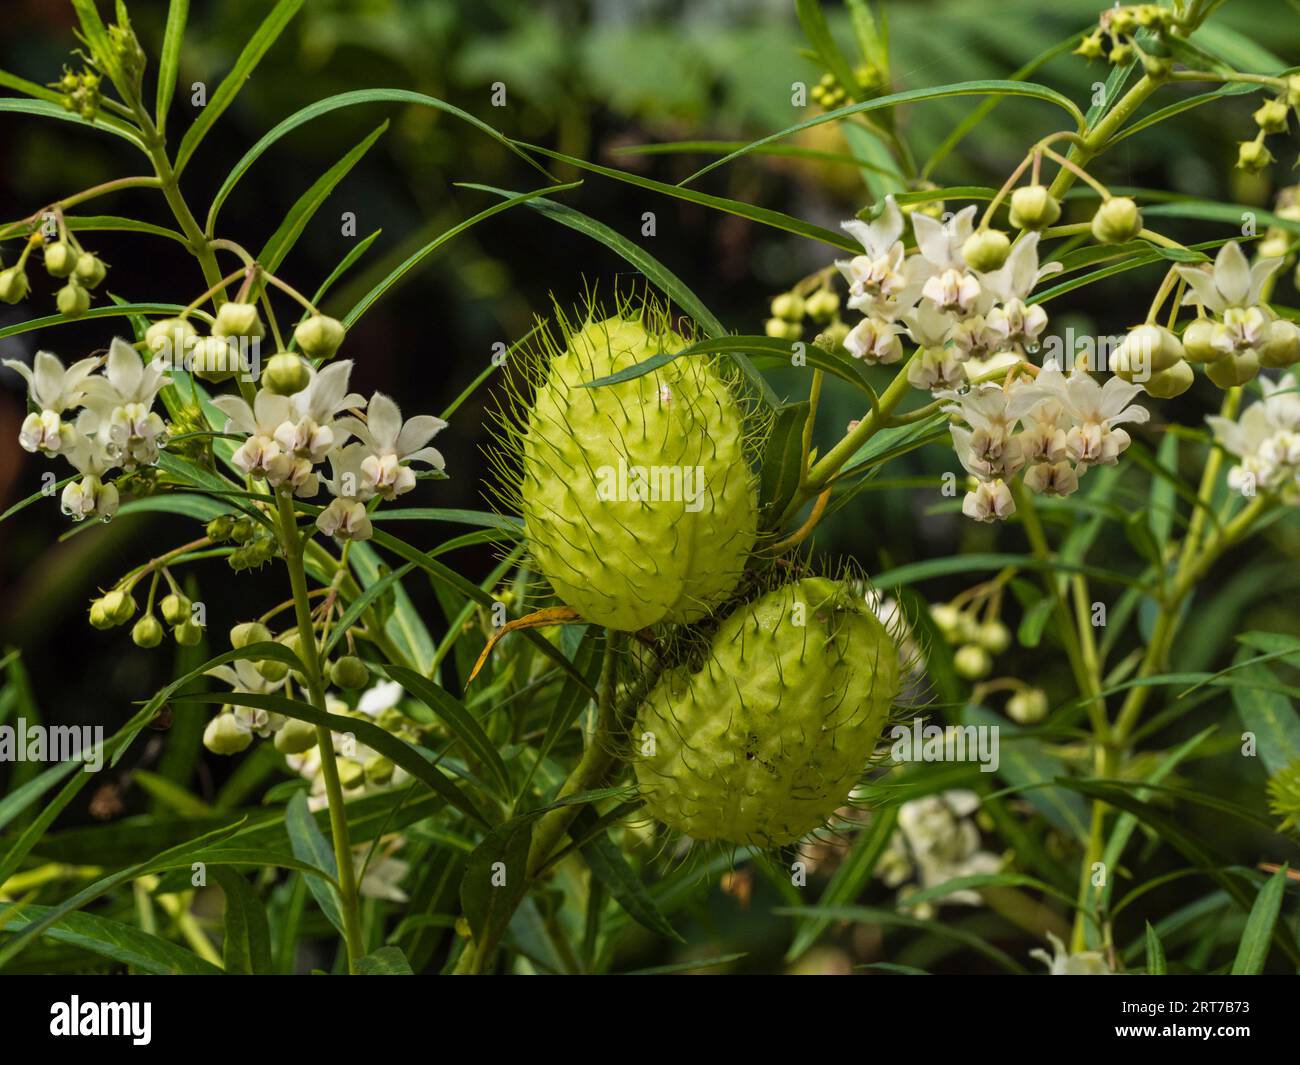 Gousses de graines apiky gonflées et fleurs blanches de la plante vivace hal-Hardy, gomphocarpus physocarpus, plante ballon Banque D'Images